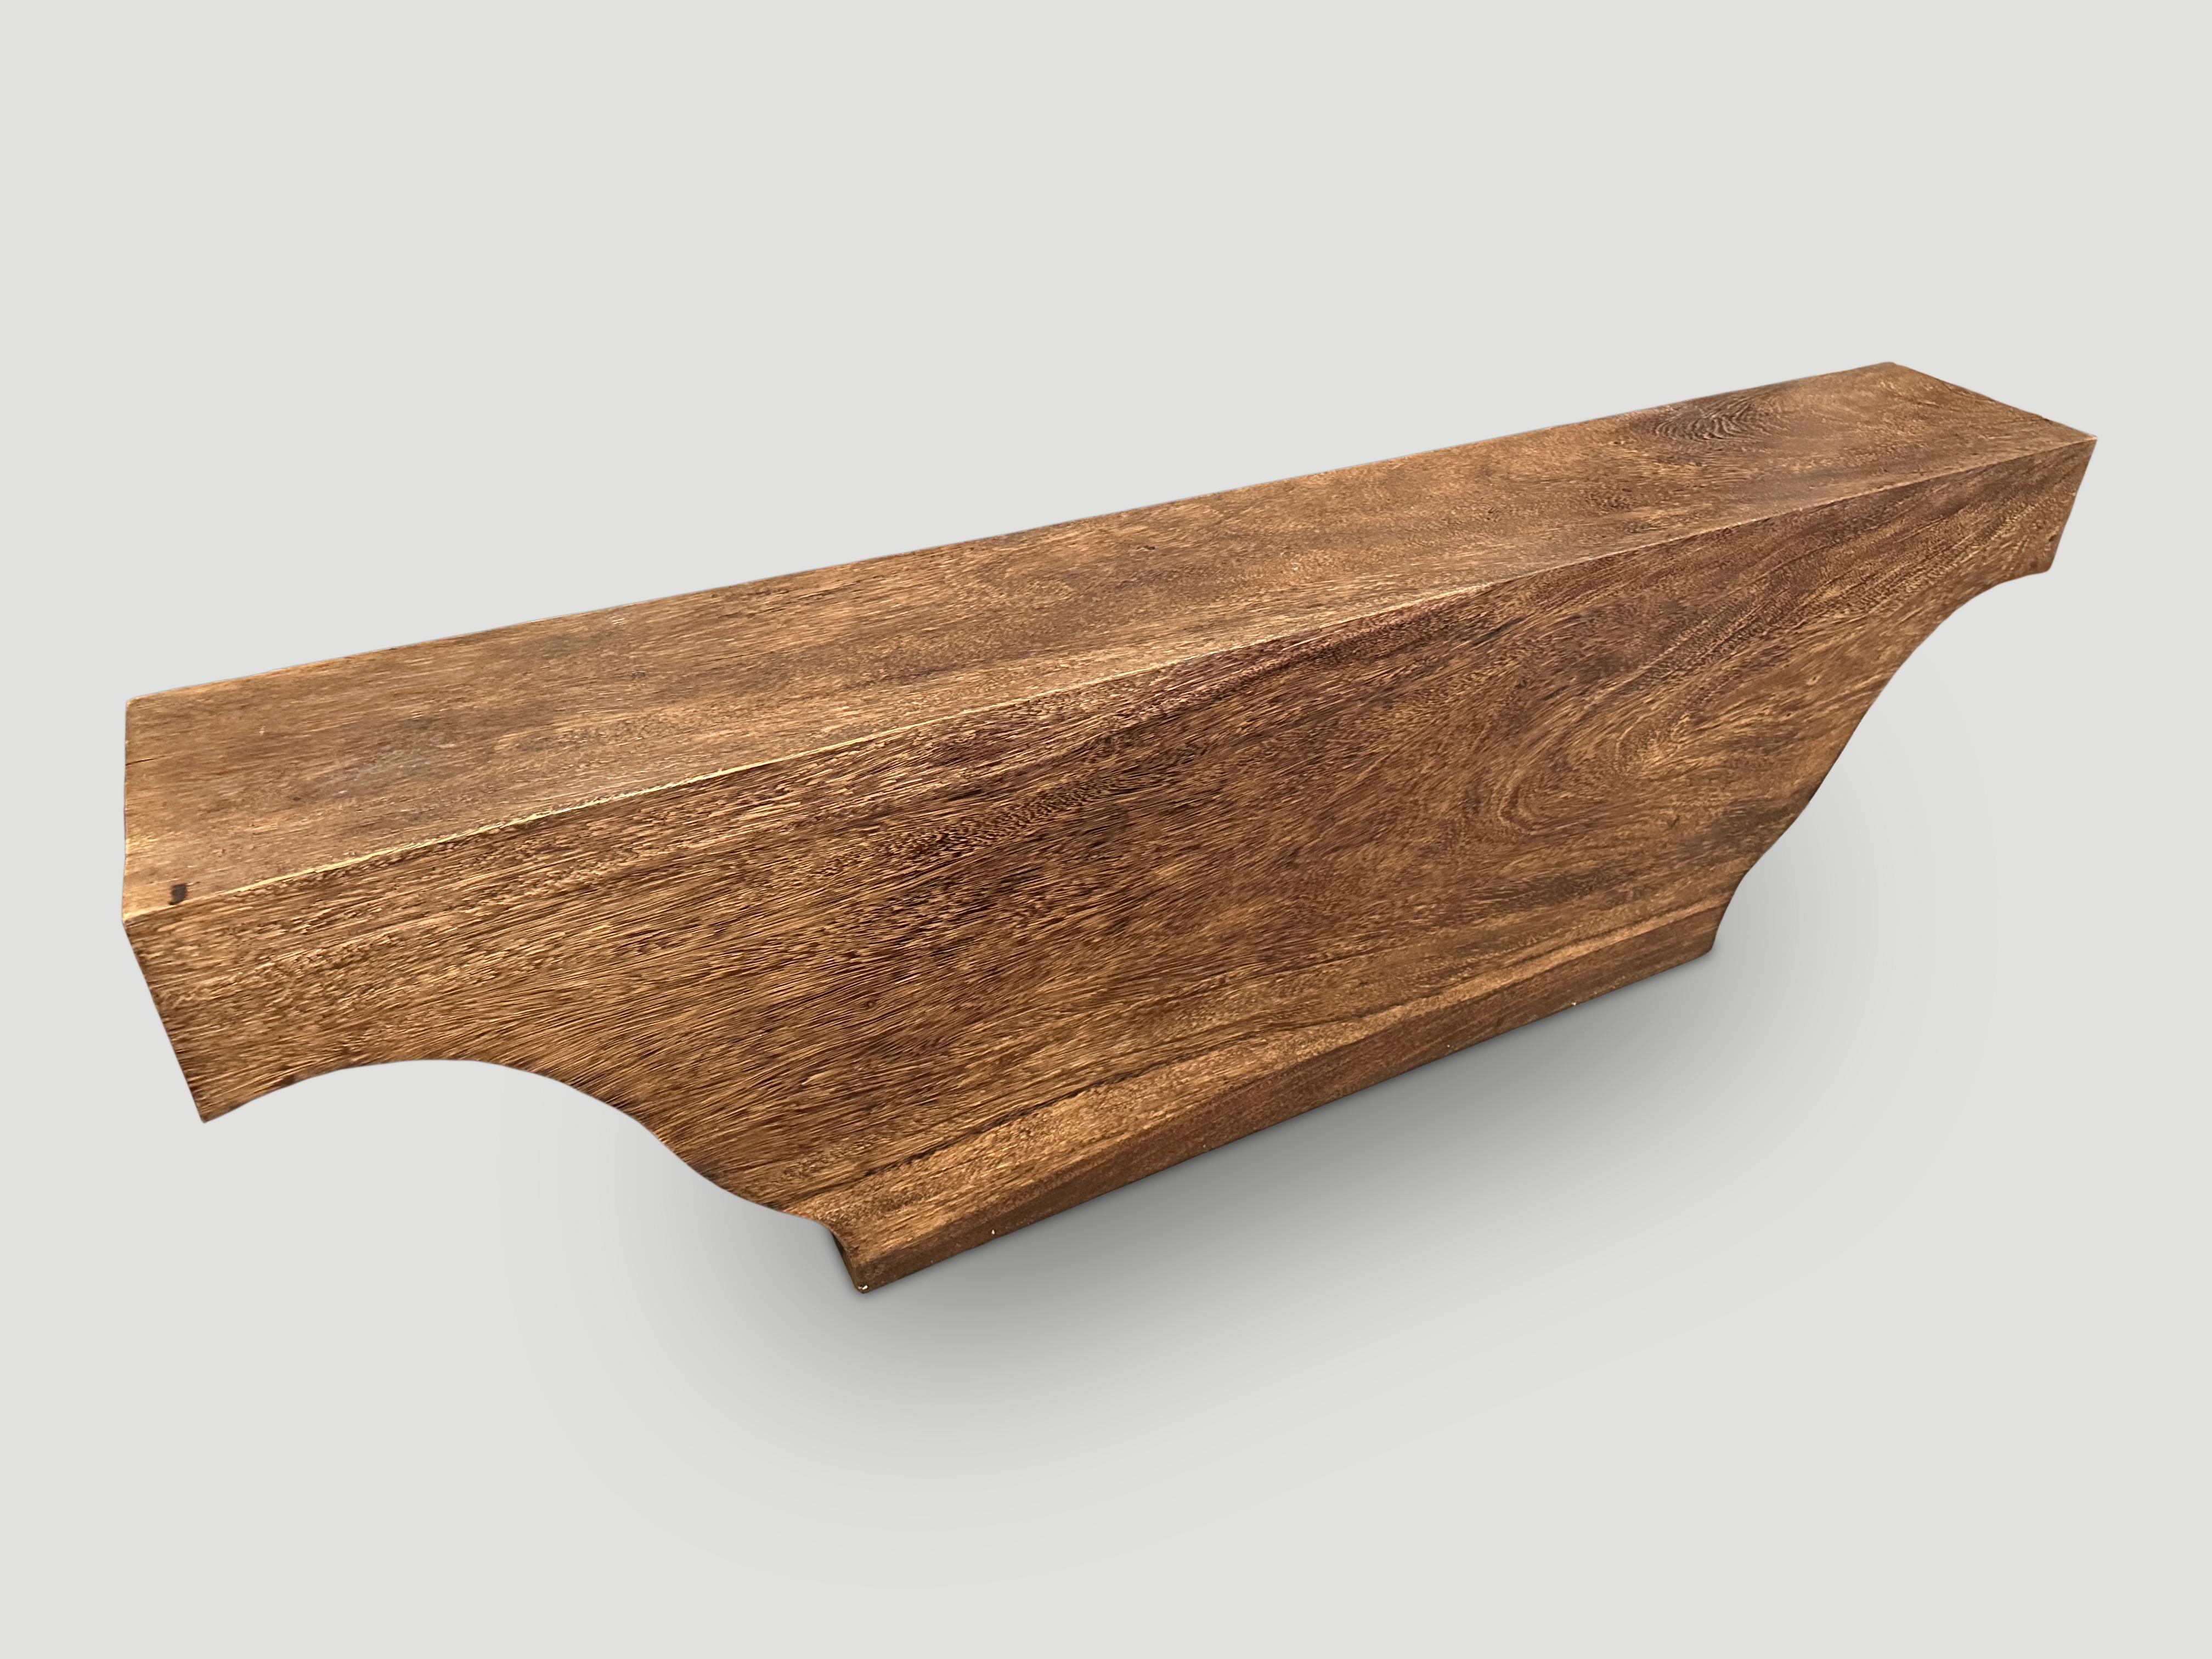 Beeindruckende Bank oder Konsole aus einem einzigen Stück wiedergewonnenen Suar-Holzes. Eine große Form mit der Spitze auf 63 